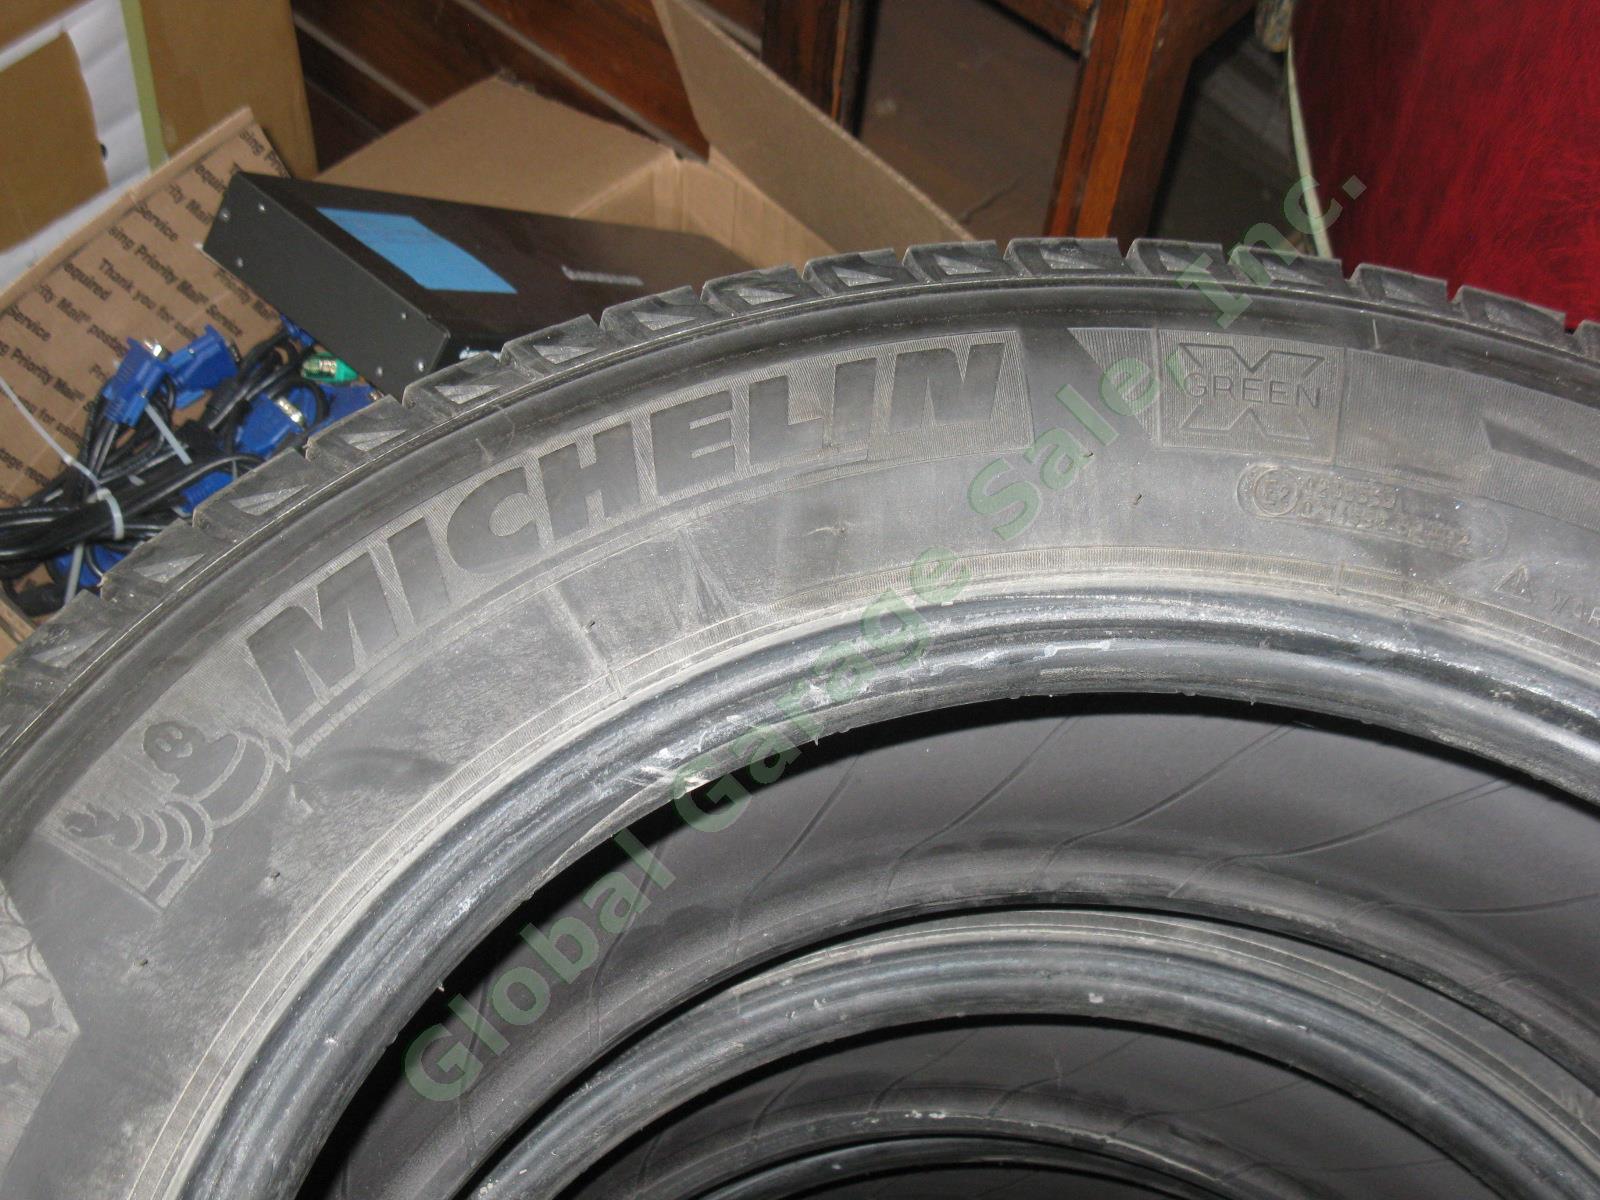 4 Michelin Latitude 18" X-Ice M+S Mud Snow Tires 235/60/R18 Acura RDX 8/32" EXC! 1